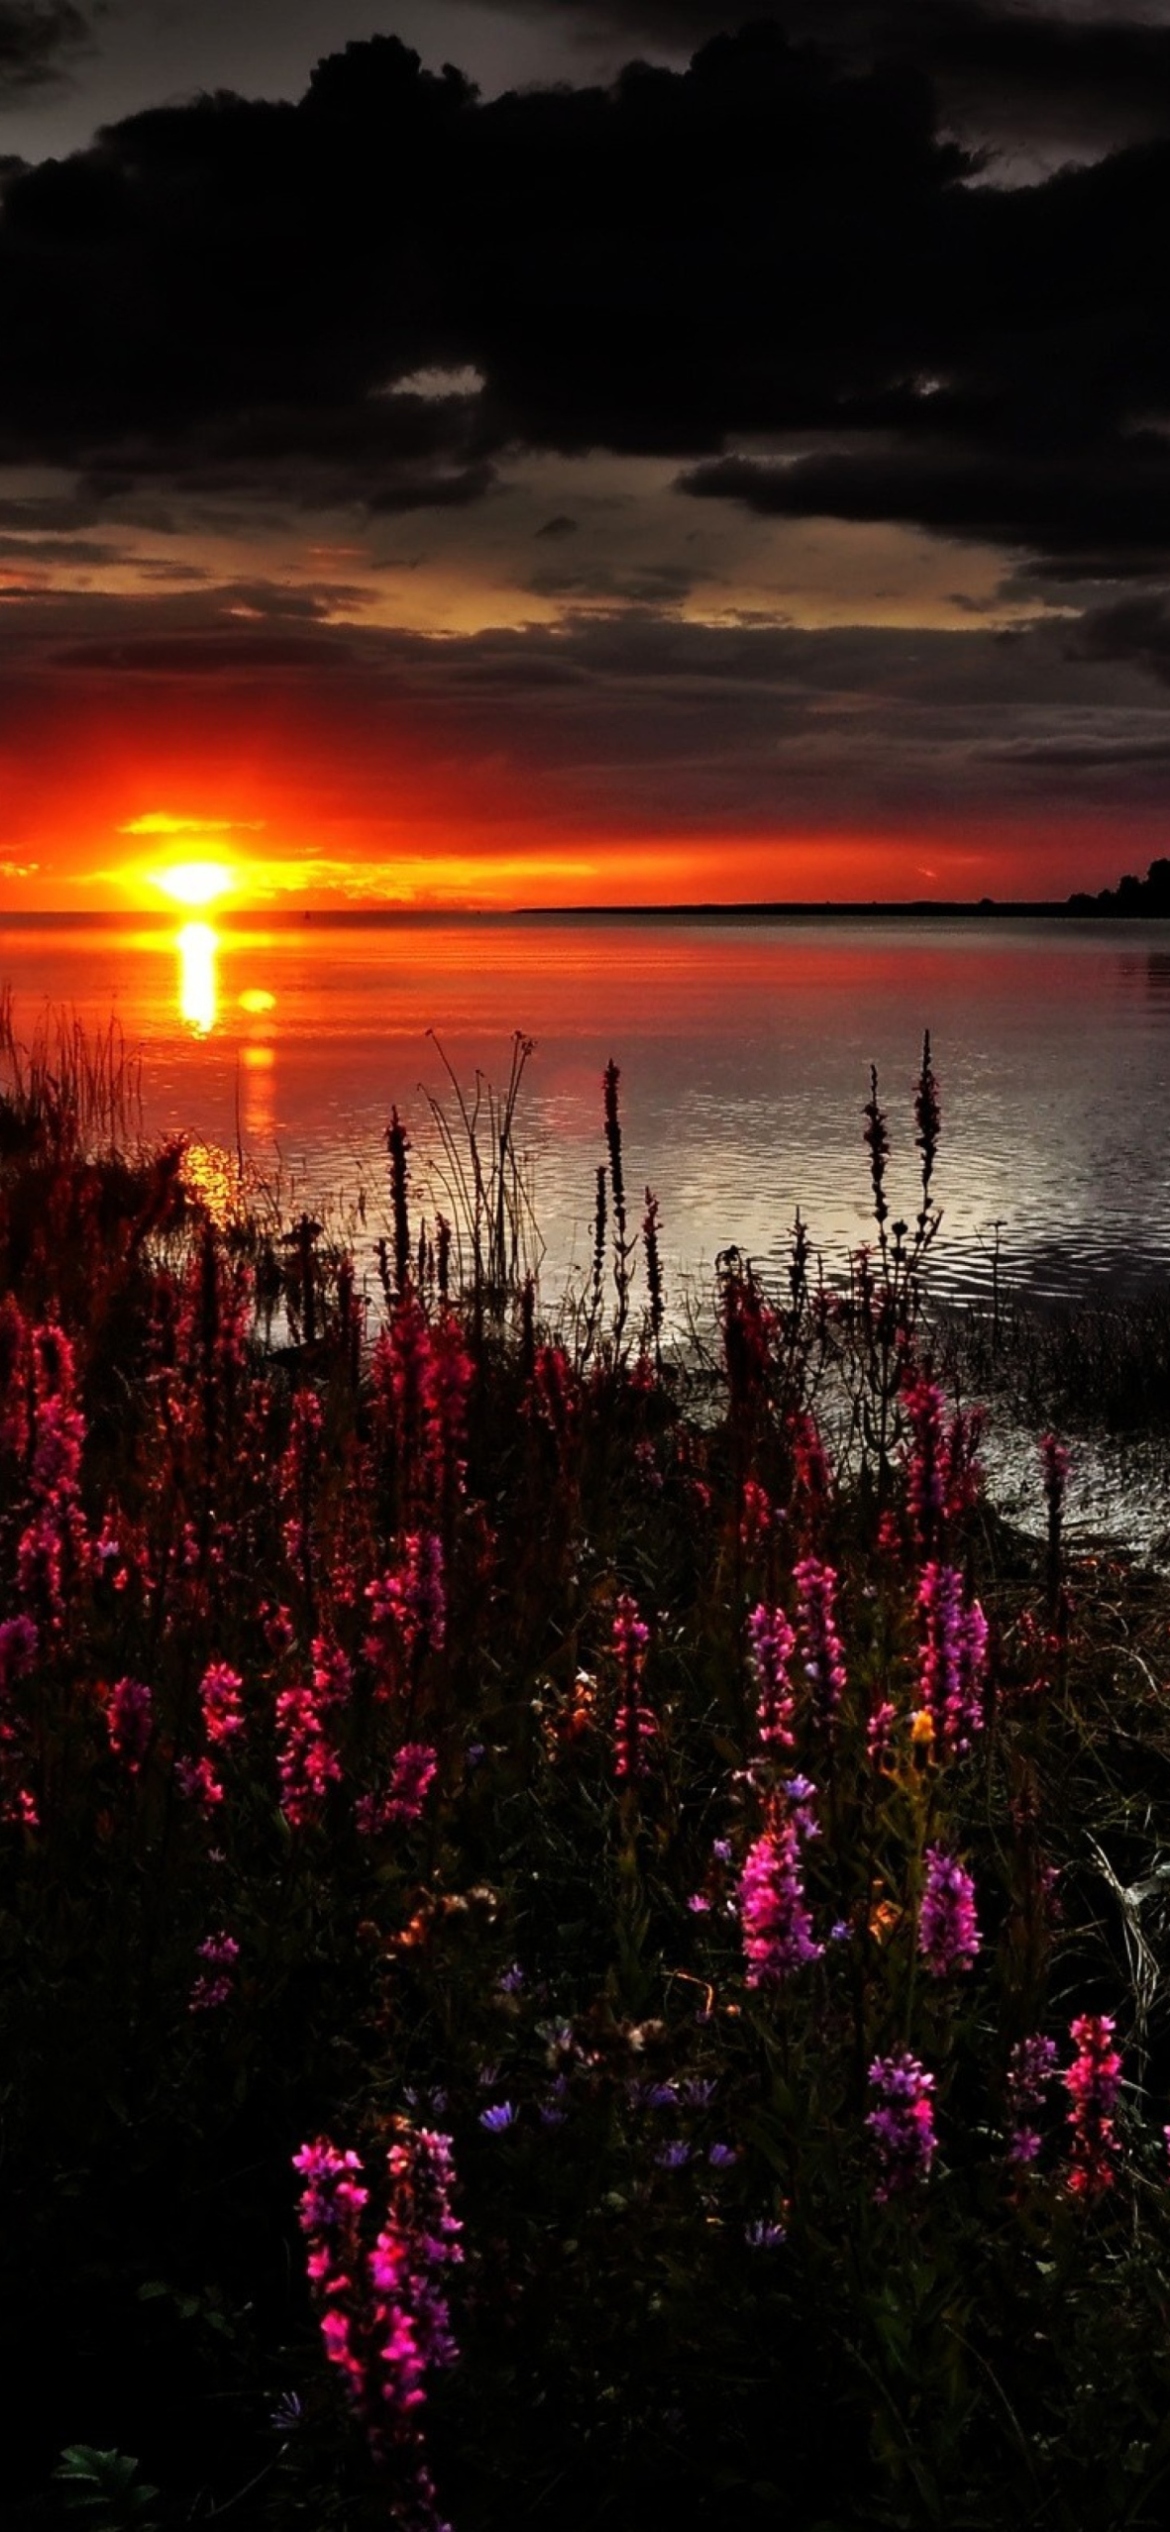 Sfondi Flowers And Lake At Sunset 1170x2532